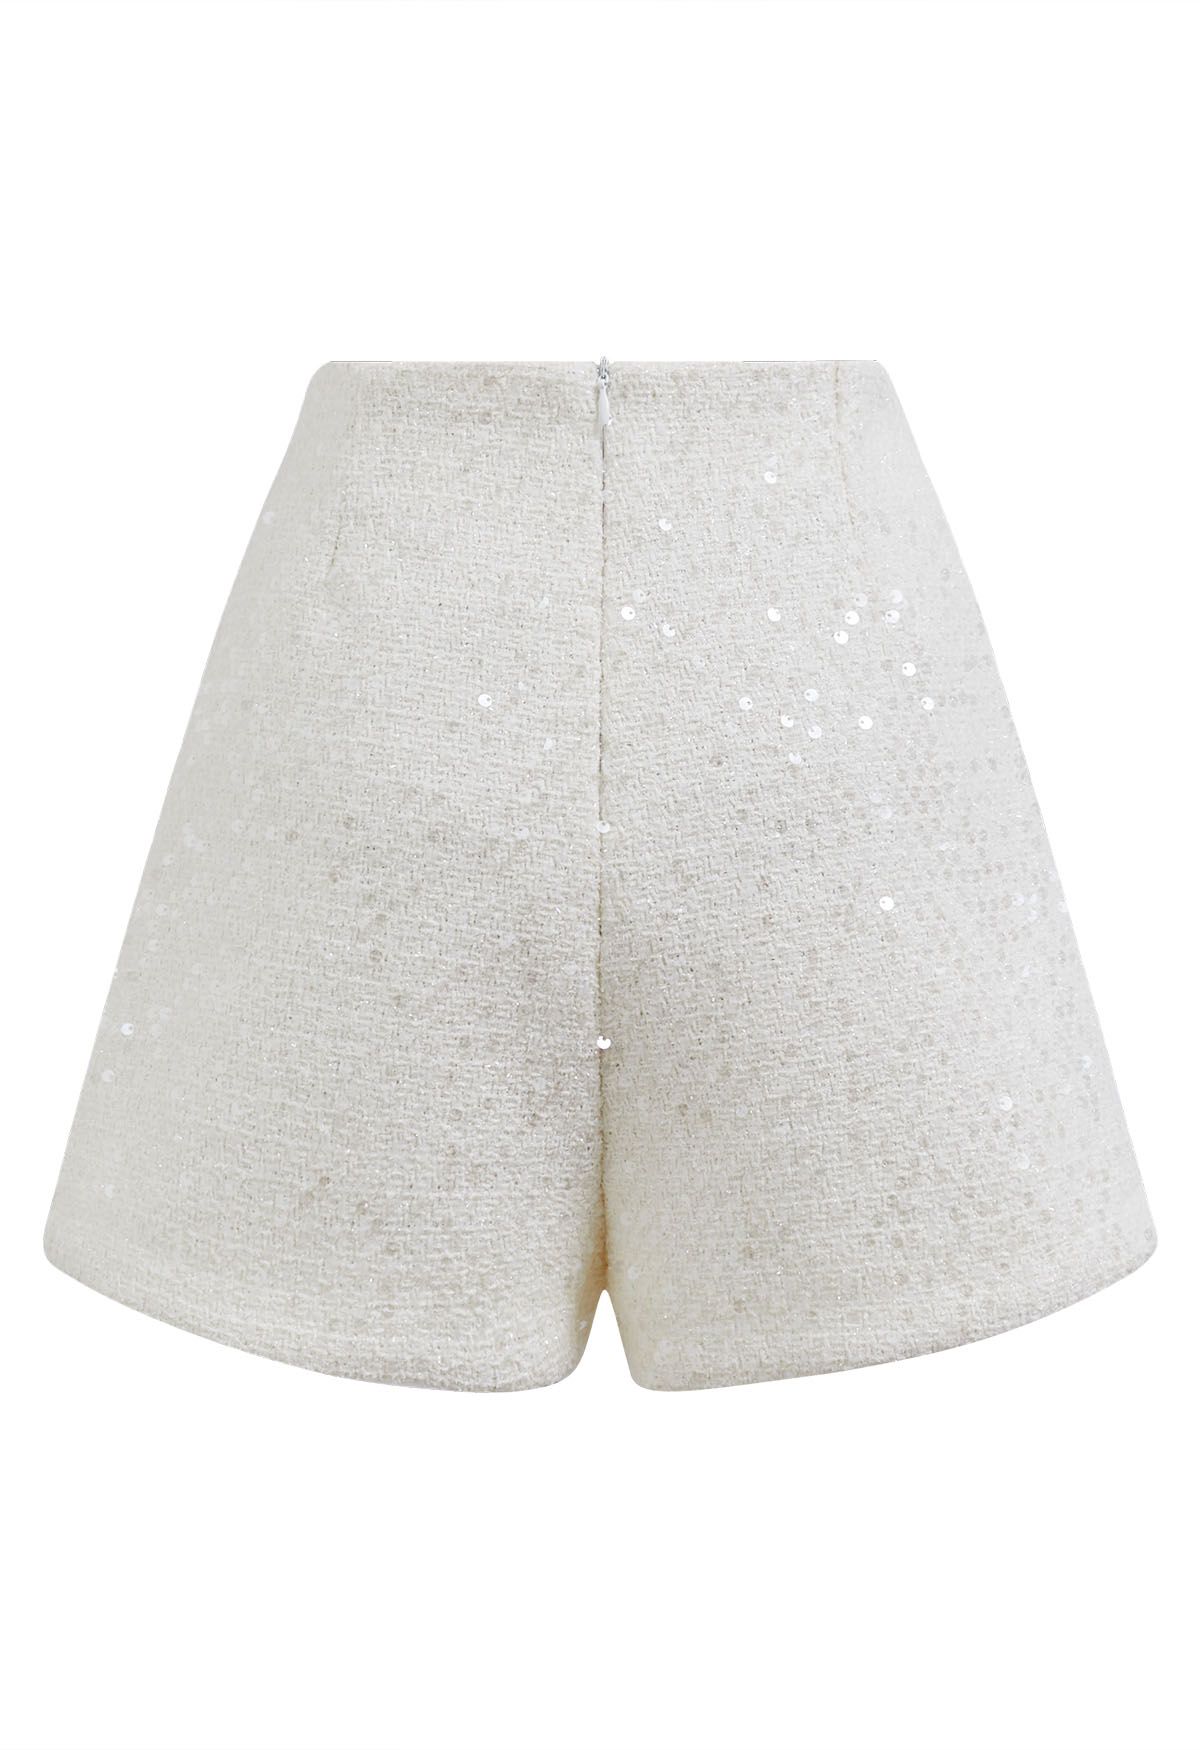 Shorts de tweed con lentejuelas y botones decorados en blanco